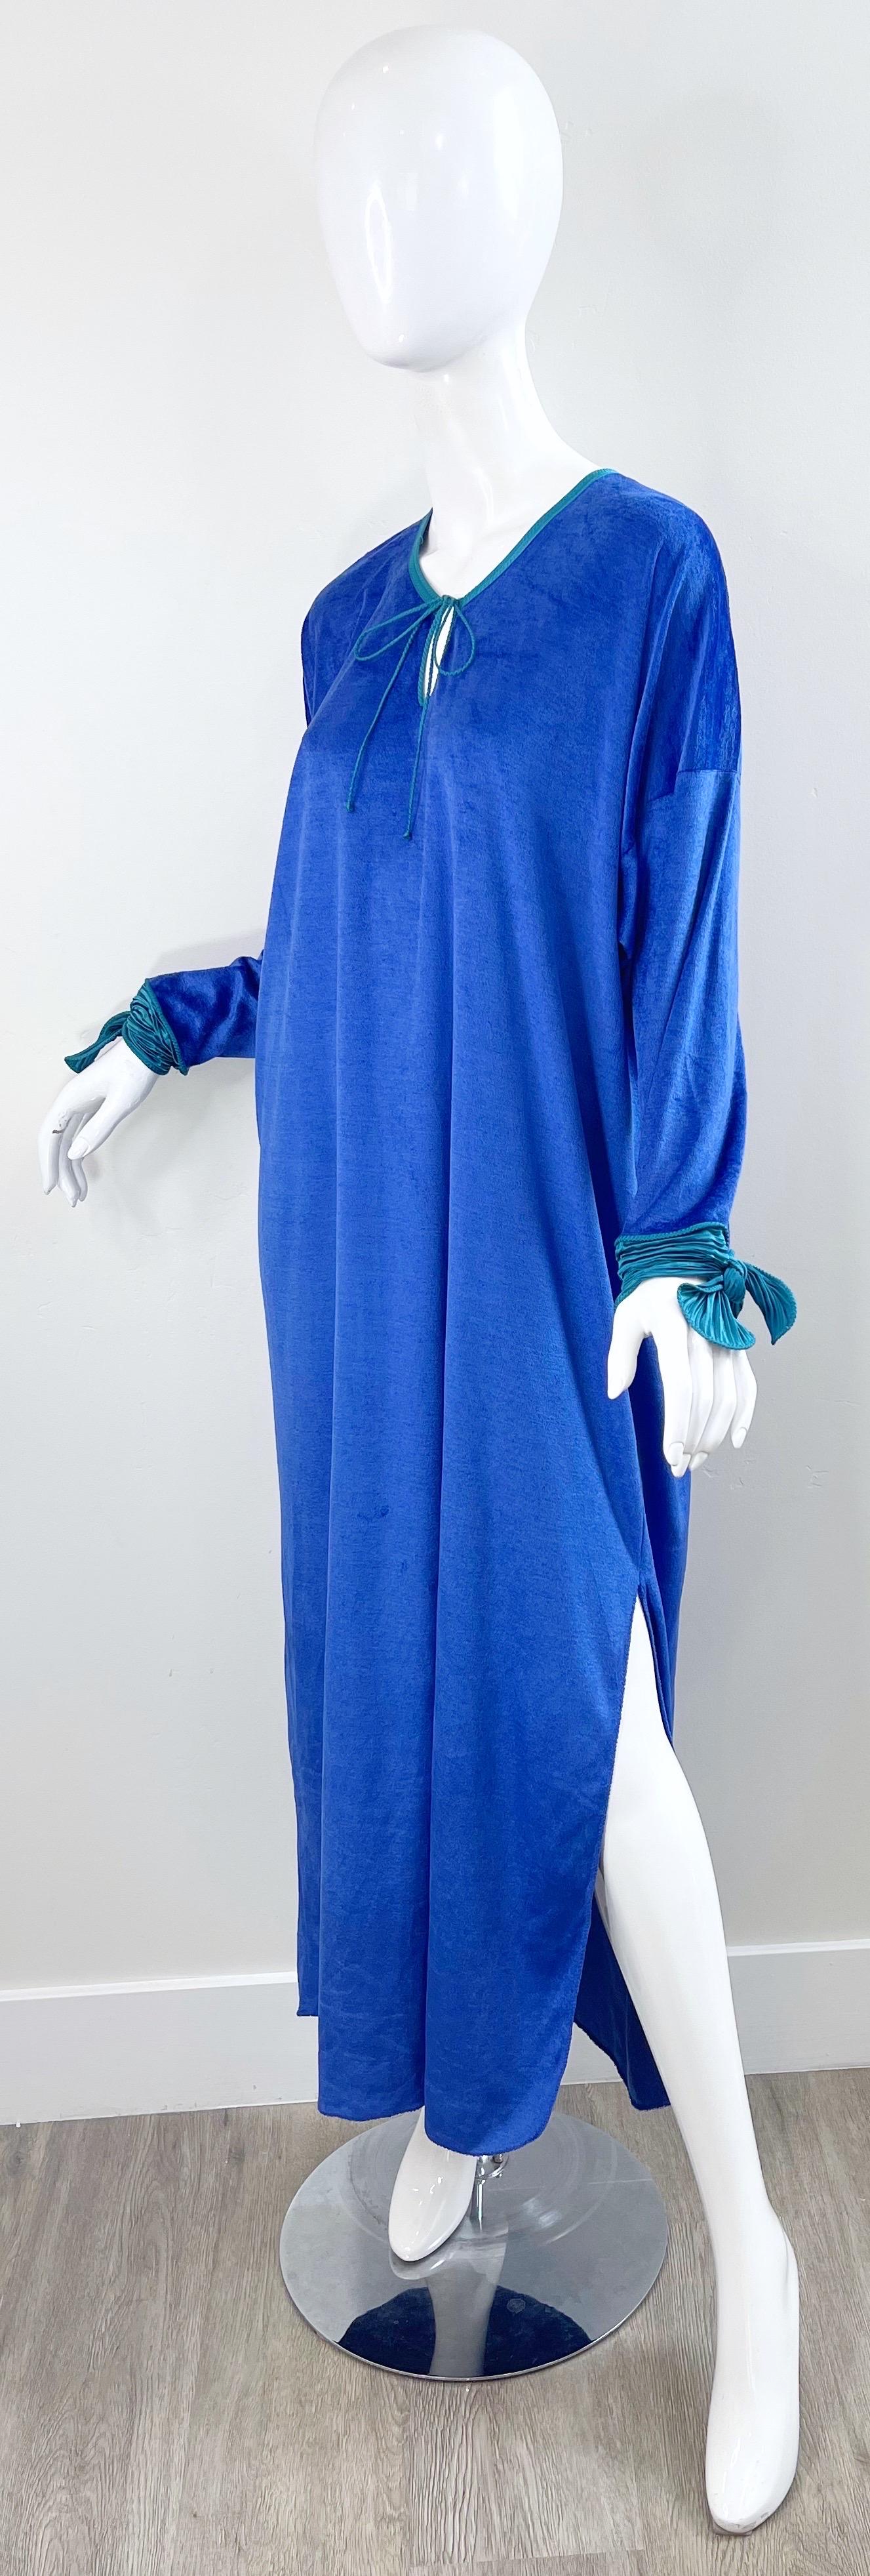 1980s Mary McFadden Royal Blue Teal Velour Vintage 80s Caftan Maxi Dress Kaftan For Sale 9